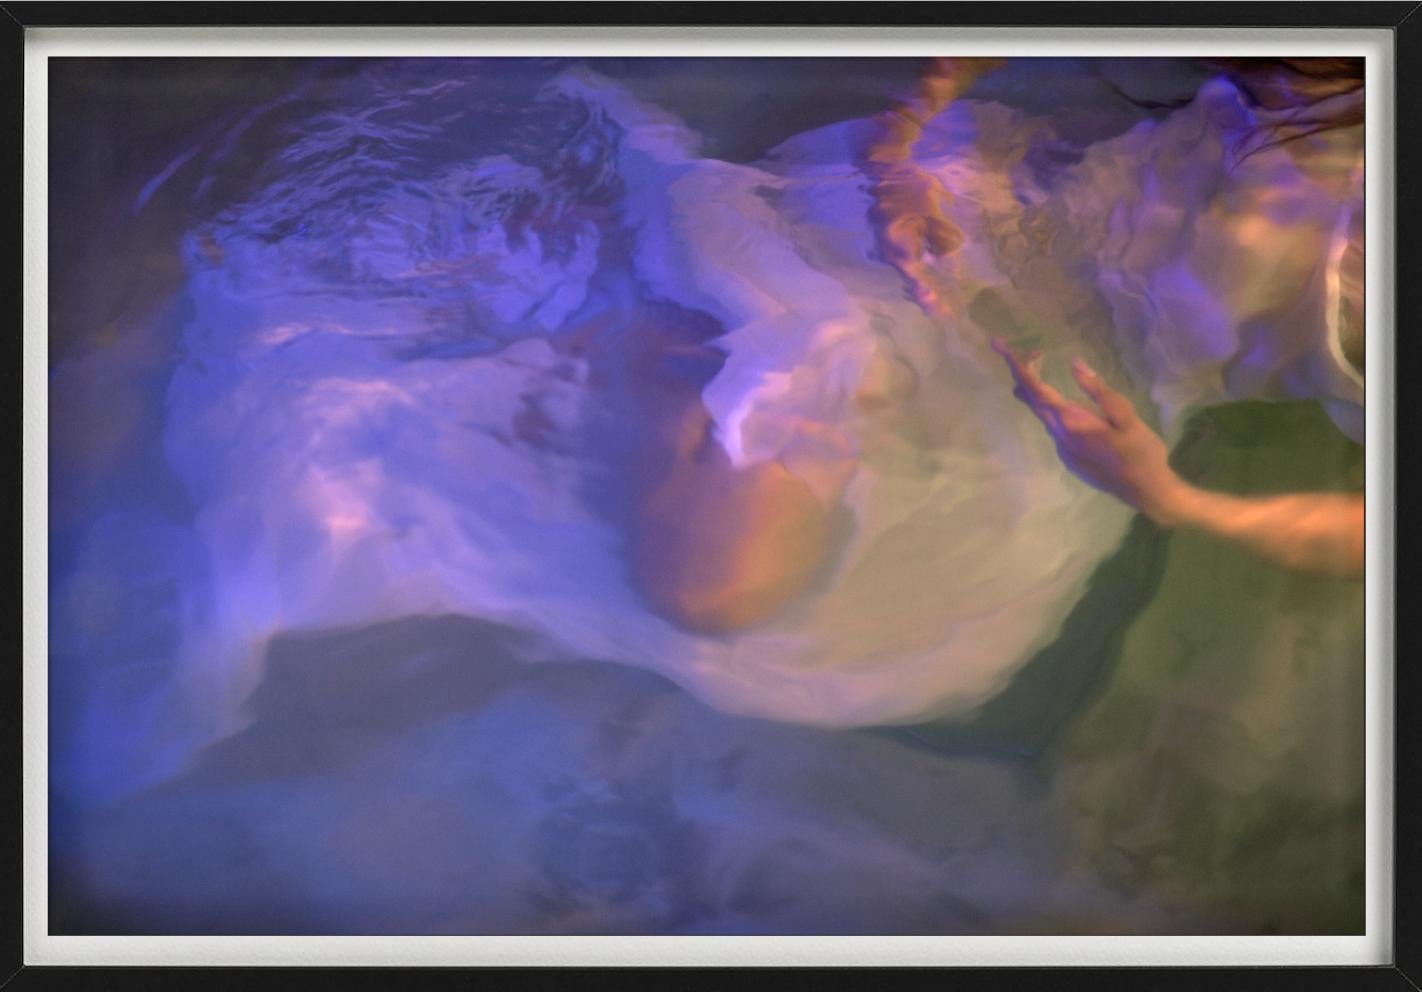 Ohne Titel #26 - Modell unter Wasser in lila Licht, Kunstfotografie ohne Titel, 2024 (Zeitgenössisch), Photograph, von Guido Argentini